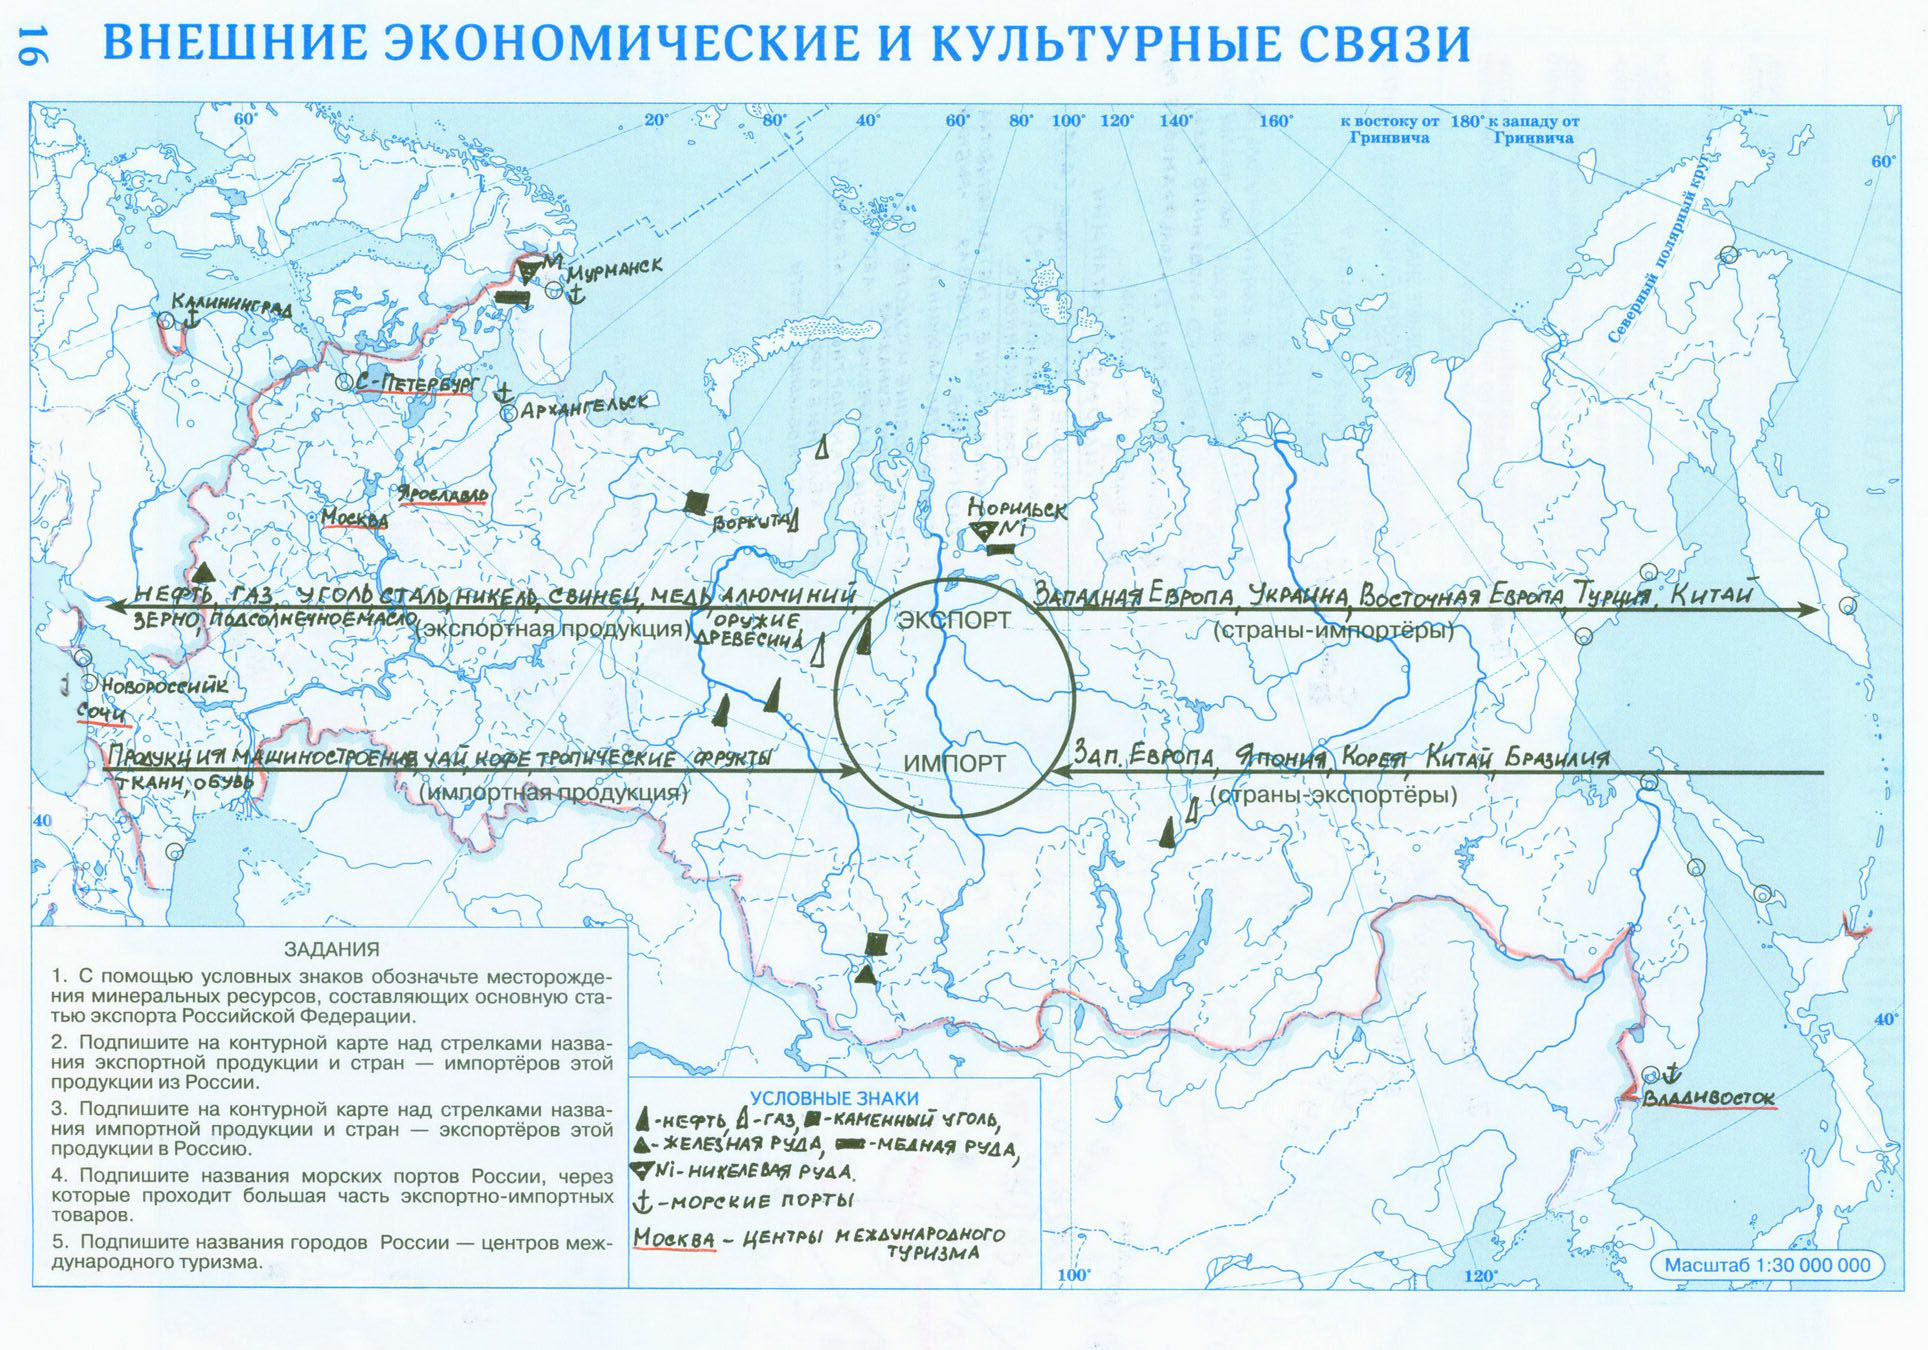 Контурная карта внешнеэкономические и культурные связи России